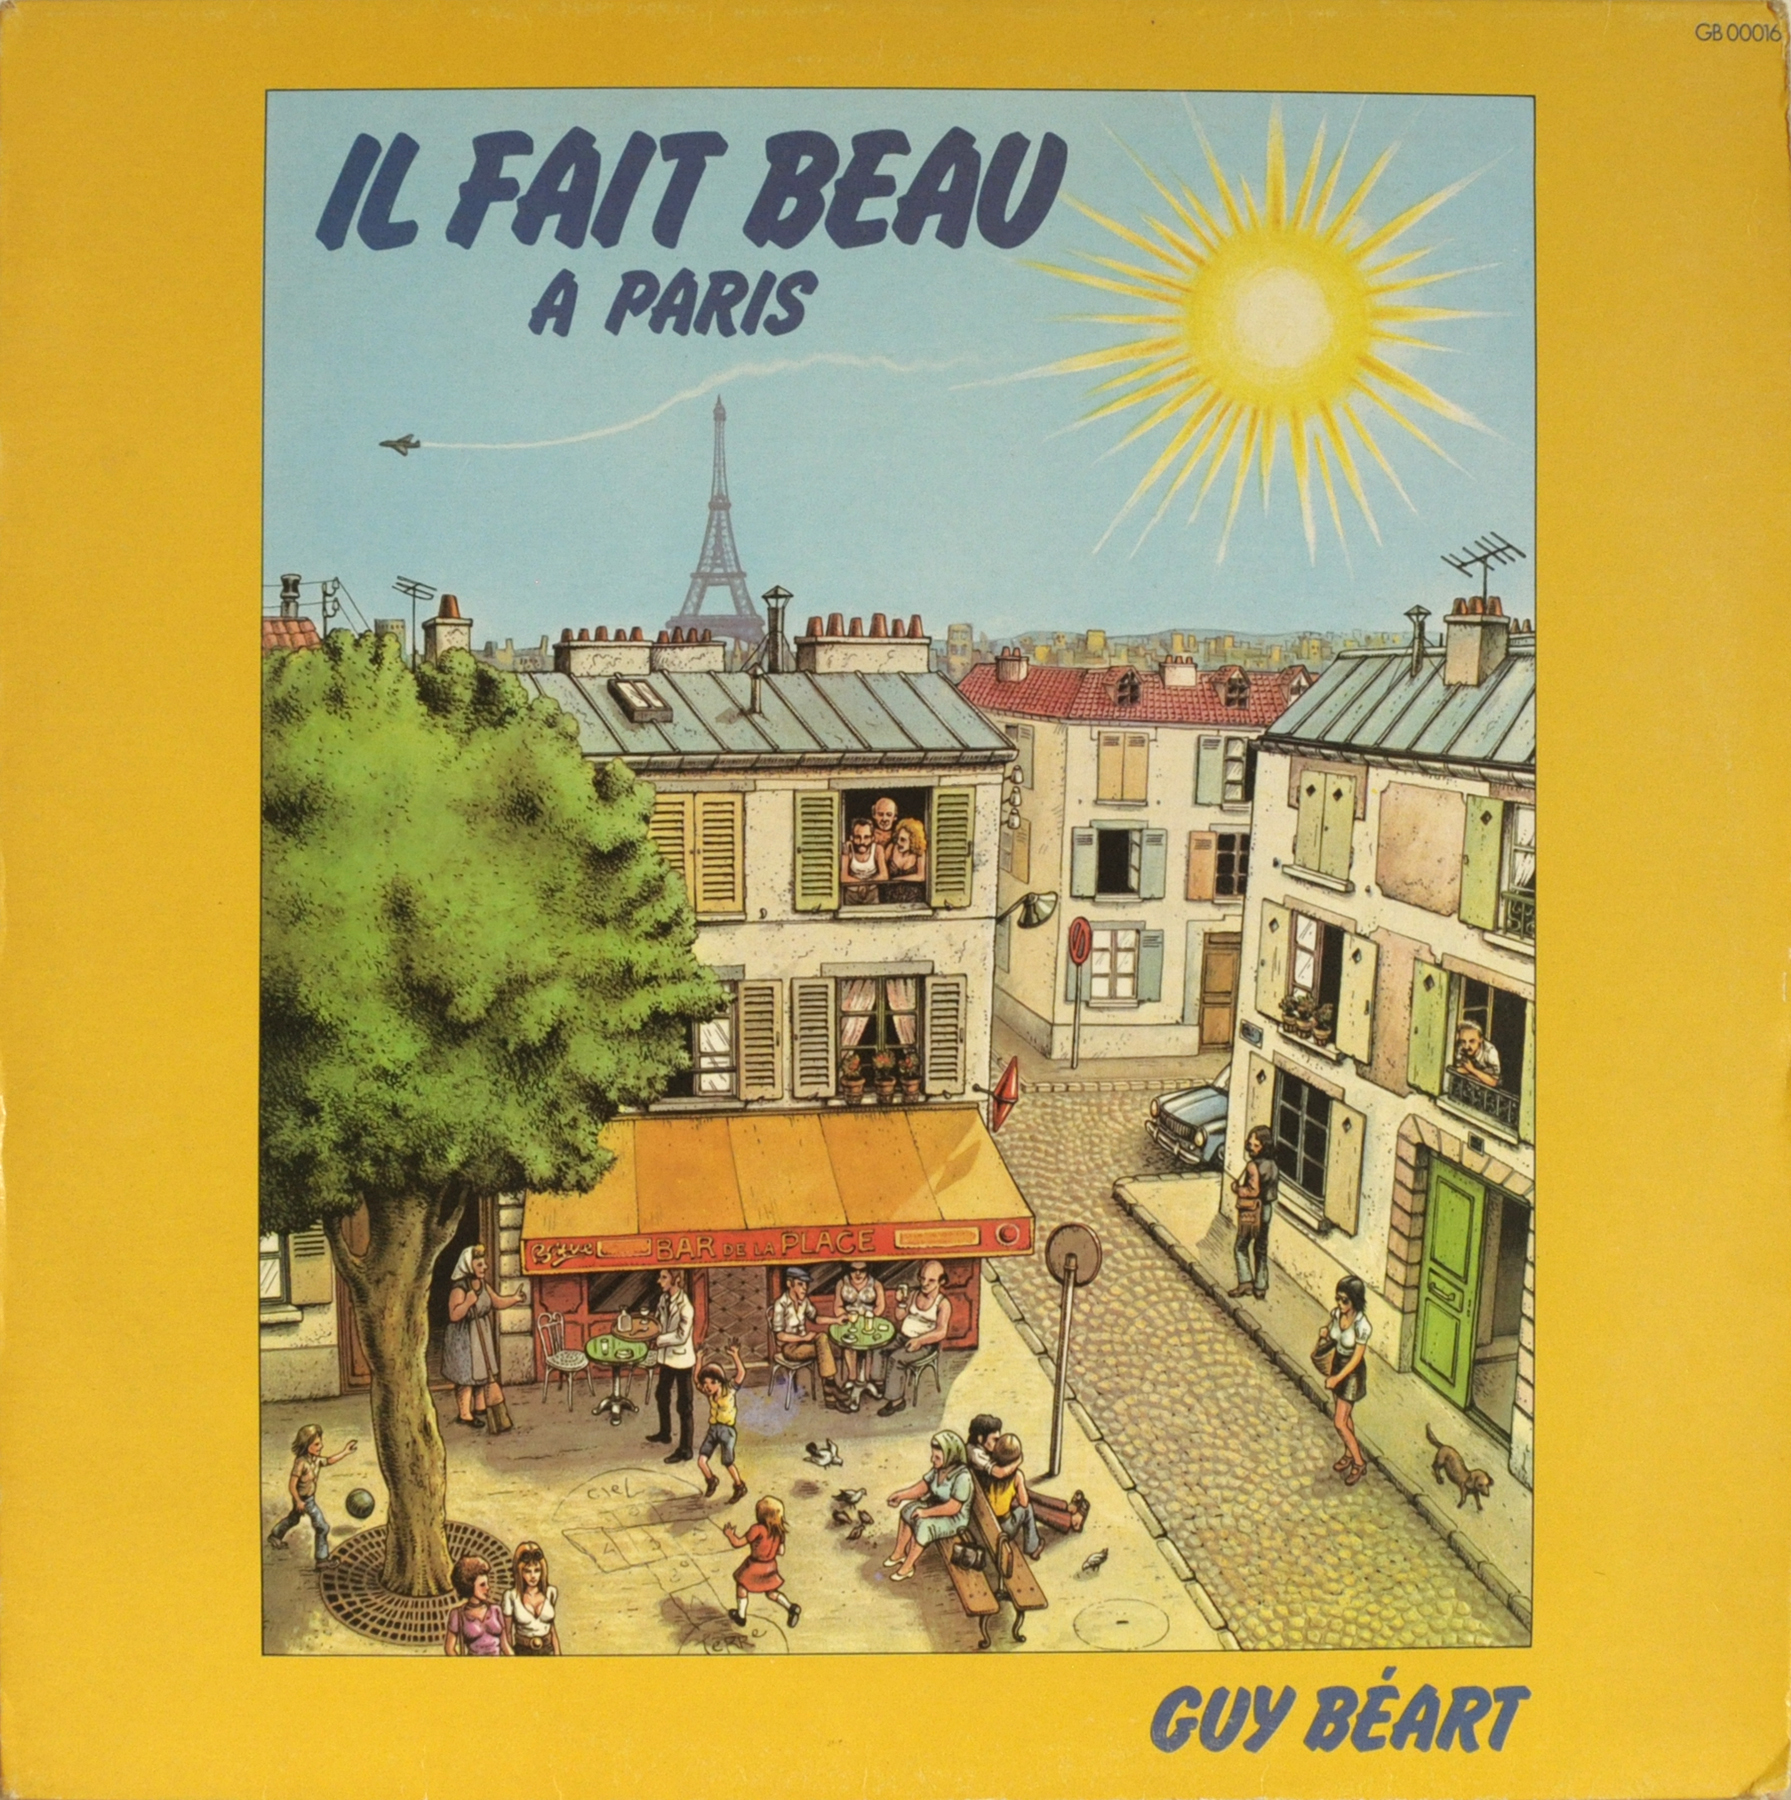 Acheter disque vinyle BEART Guy Il fait beau à Paris a vendre